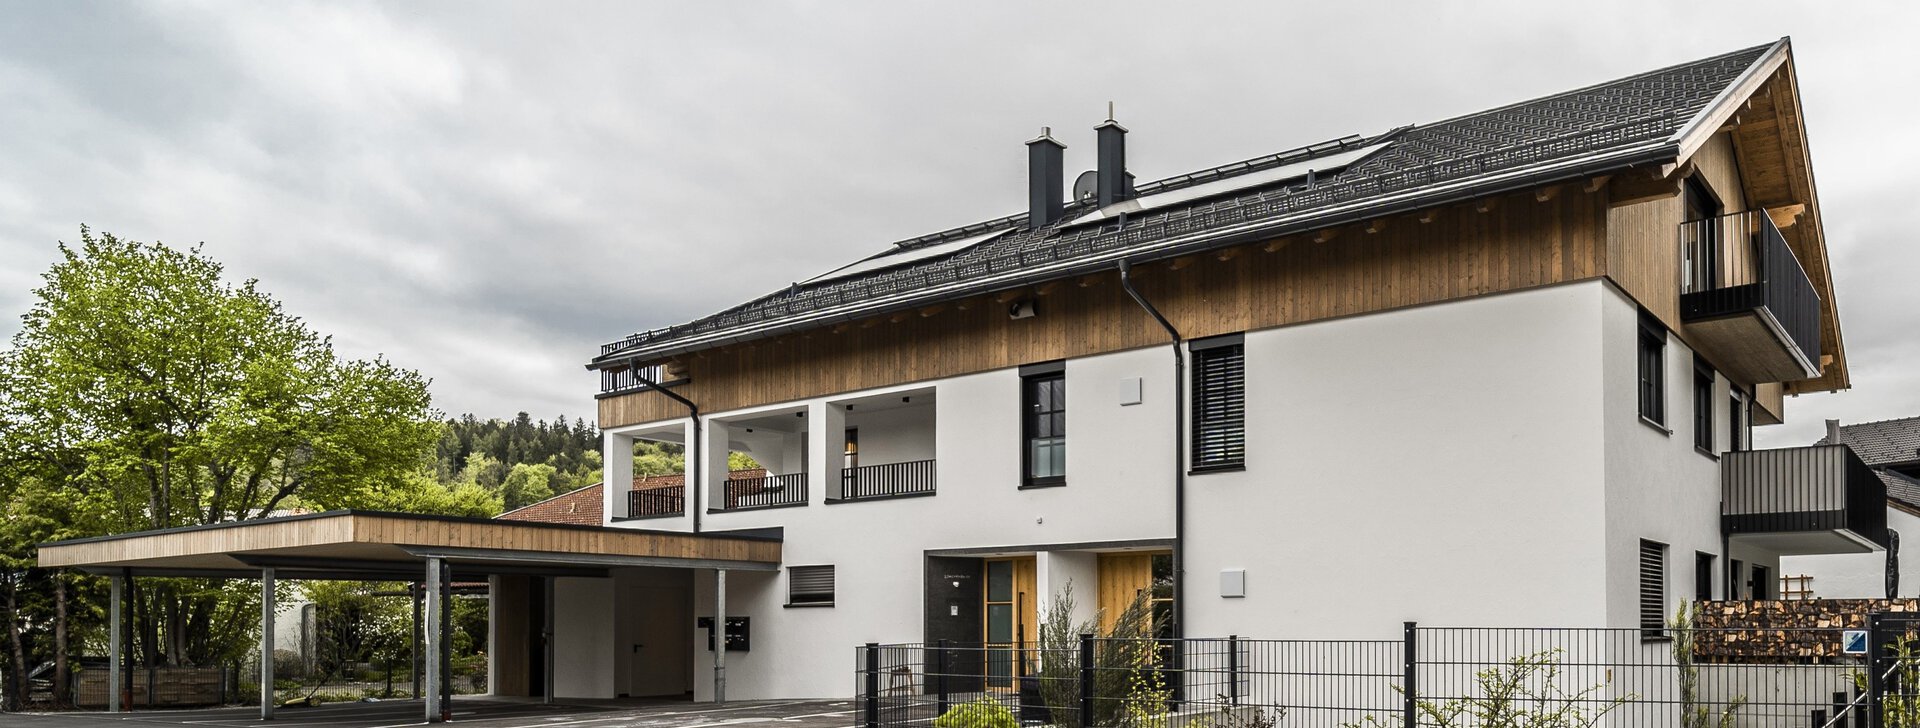 Außenansicht, Dachgeschosswohnung, Immobilie kaufen, Waging am See | © HausBauHaus GmbH 